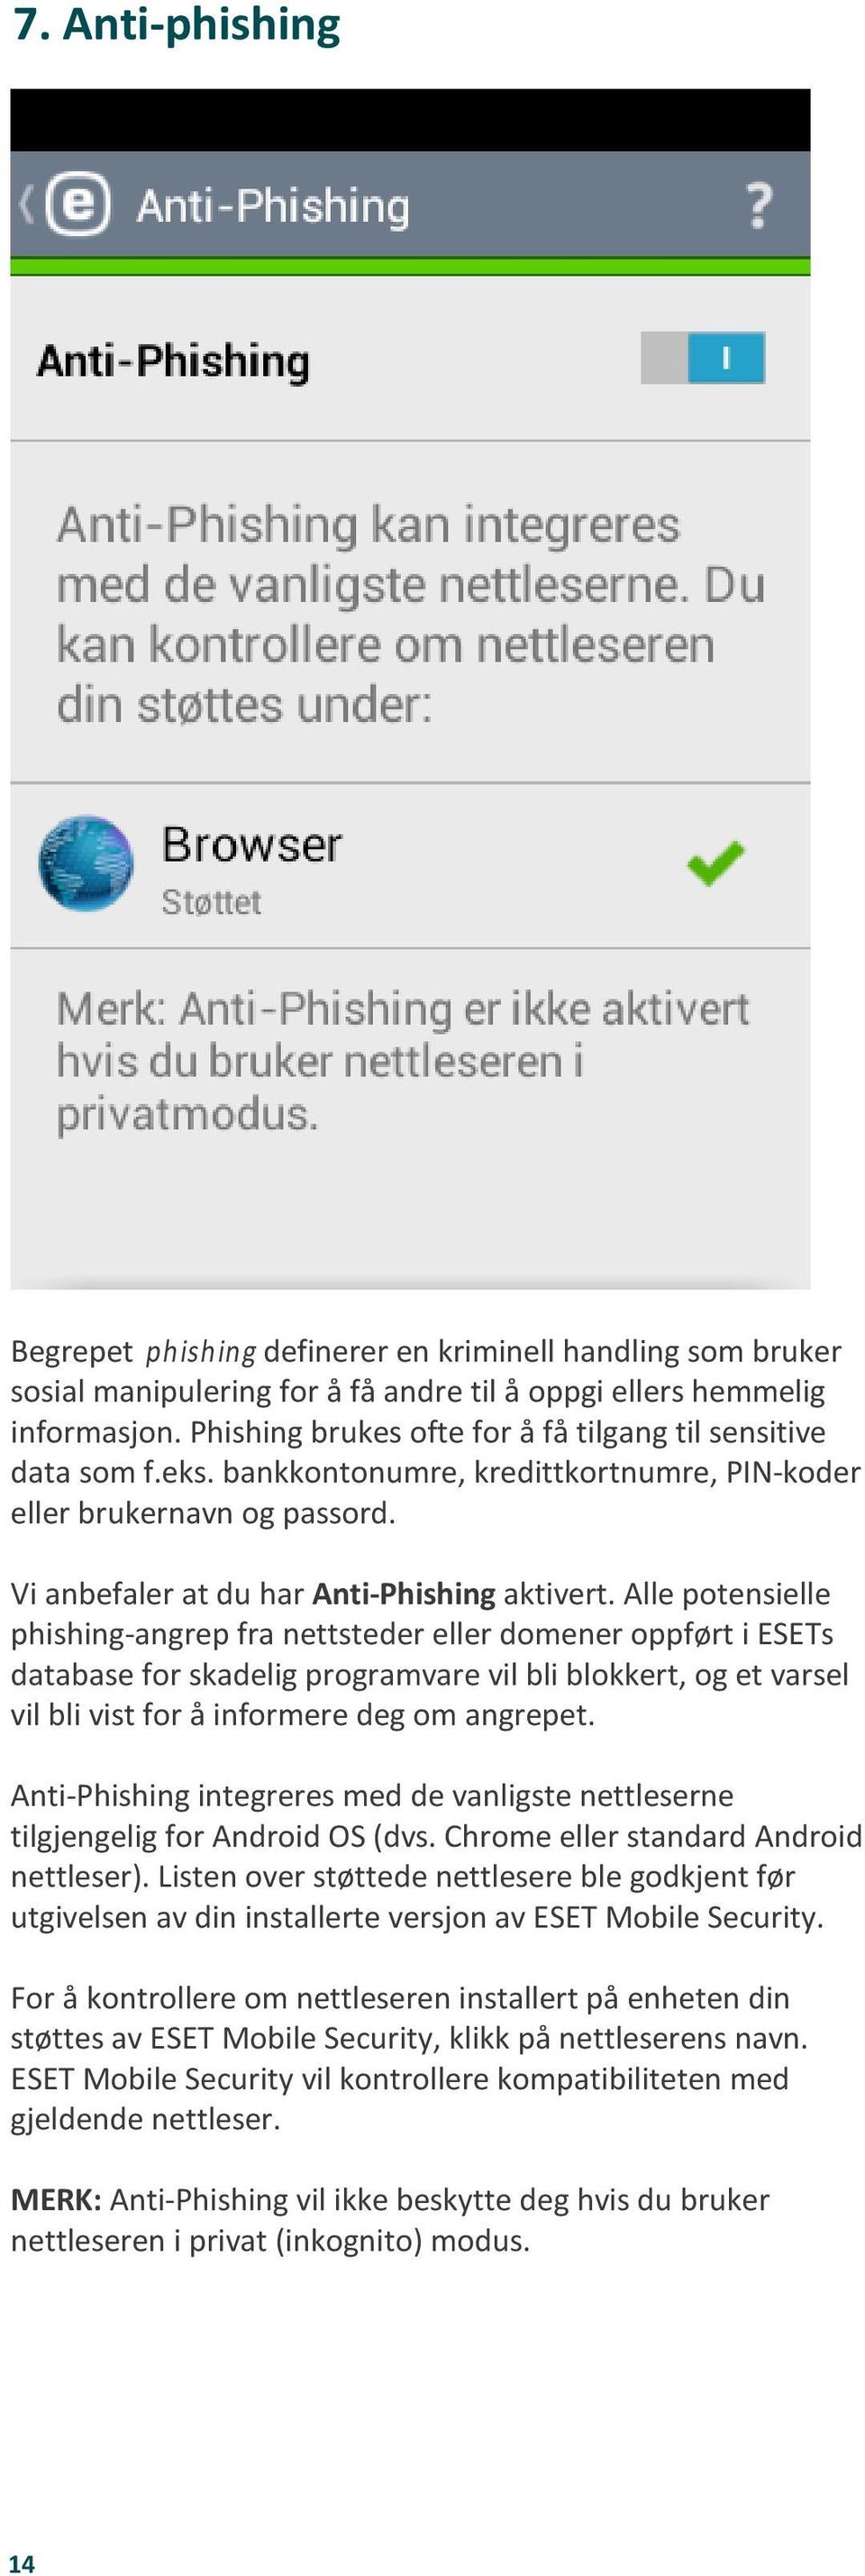 Alle potensielle phishing-angrep fra nettsteder eller domener oppført i ESETs database for skadelig programvare vil bli blokkert, og et varsel vil bli vist for å informere deg om angrepet.